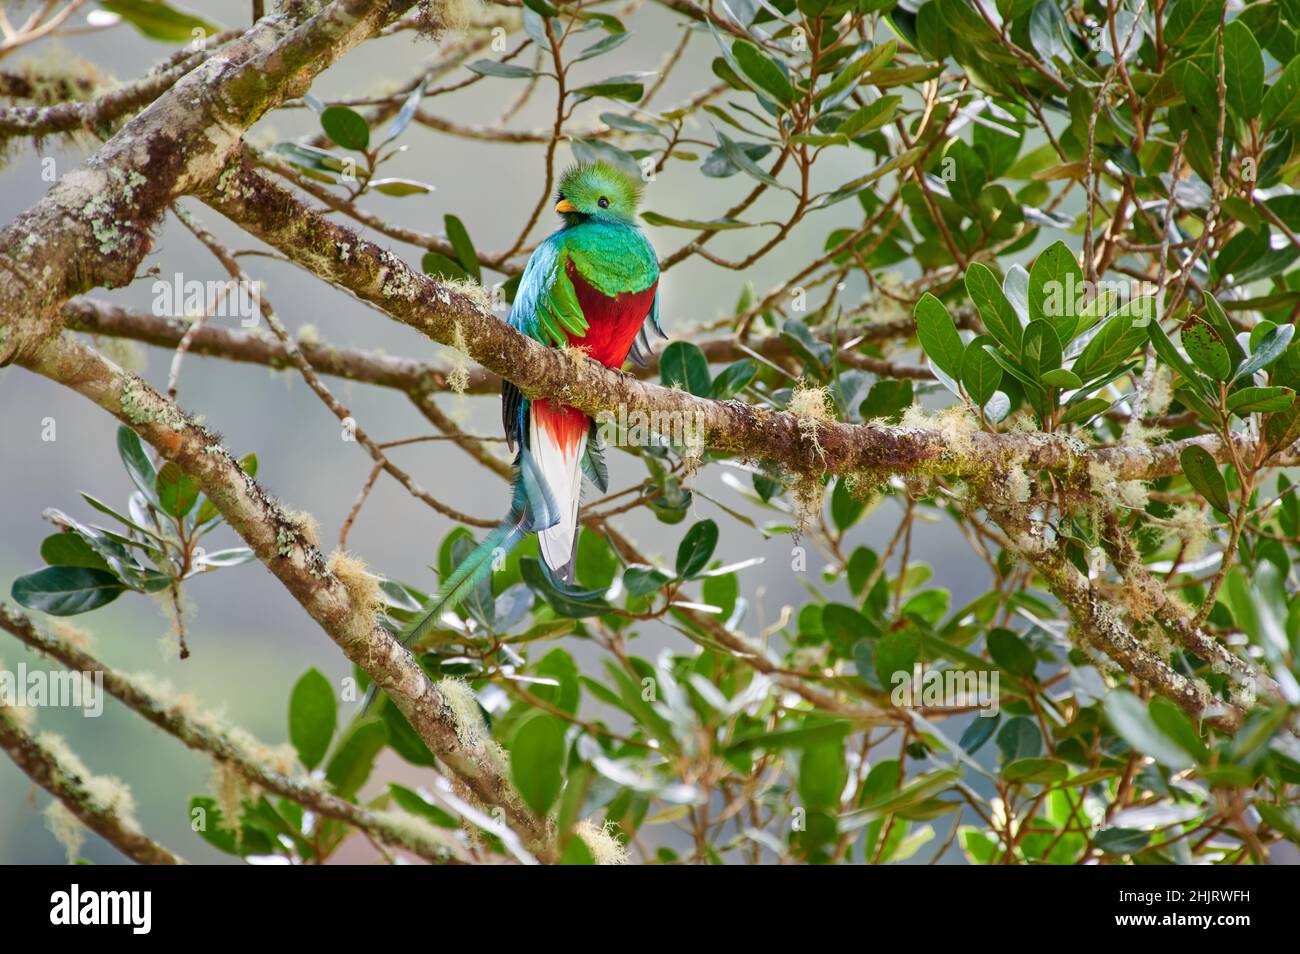 Quetzal (Pharomachrus mocinno), mâle resplendent et coloré, sur un arbre d'avocat sauvage, San Gerardo de Dota, Costa Rica, Amérique centrale Banque D'Images